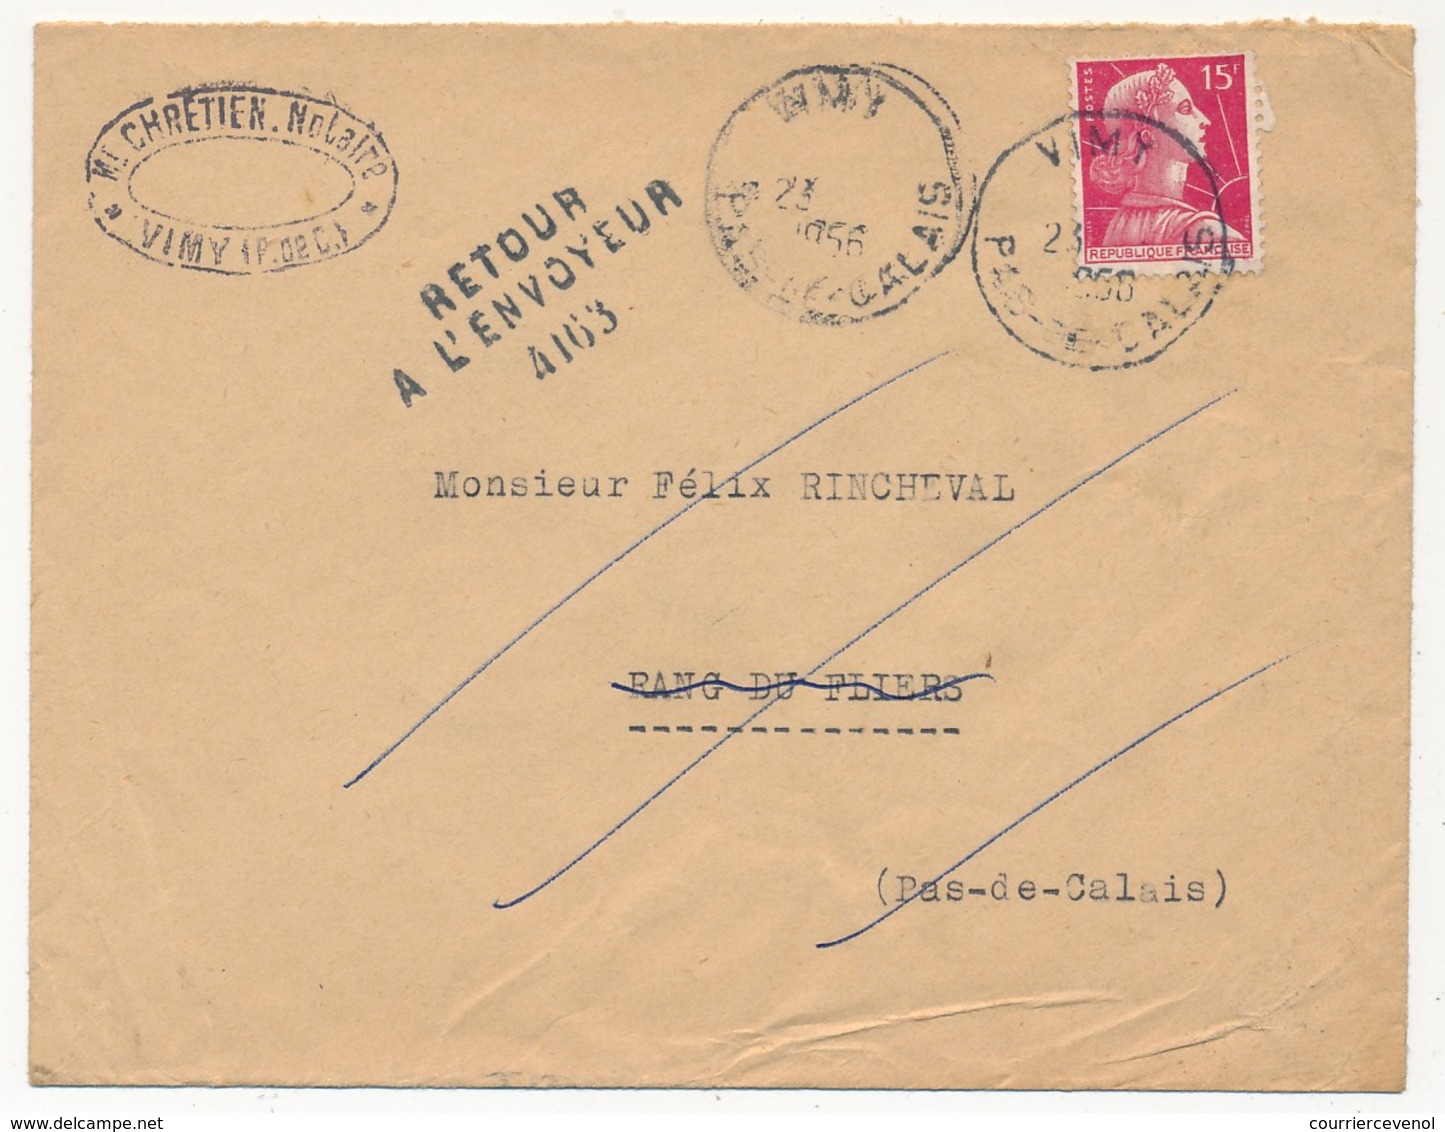 FRANCE - Enveloppe Depuis VIMY (Pas De Calais) 1956 - Cachet Numéroté "Retour à L'envoyeur 4163" (Rang Du Flier) - Handstempel